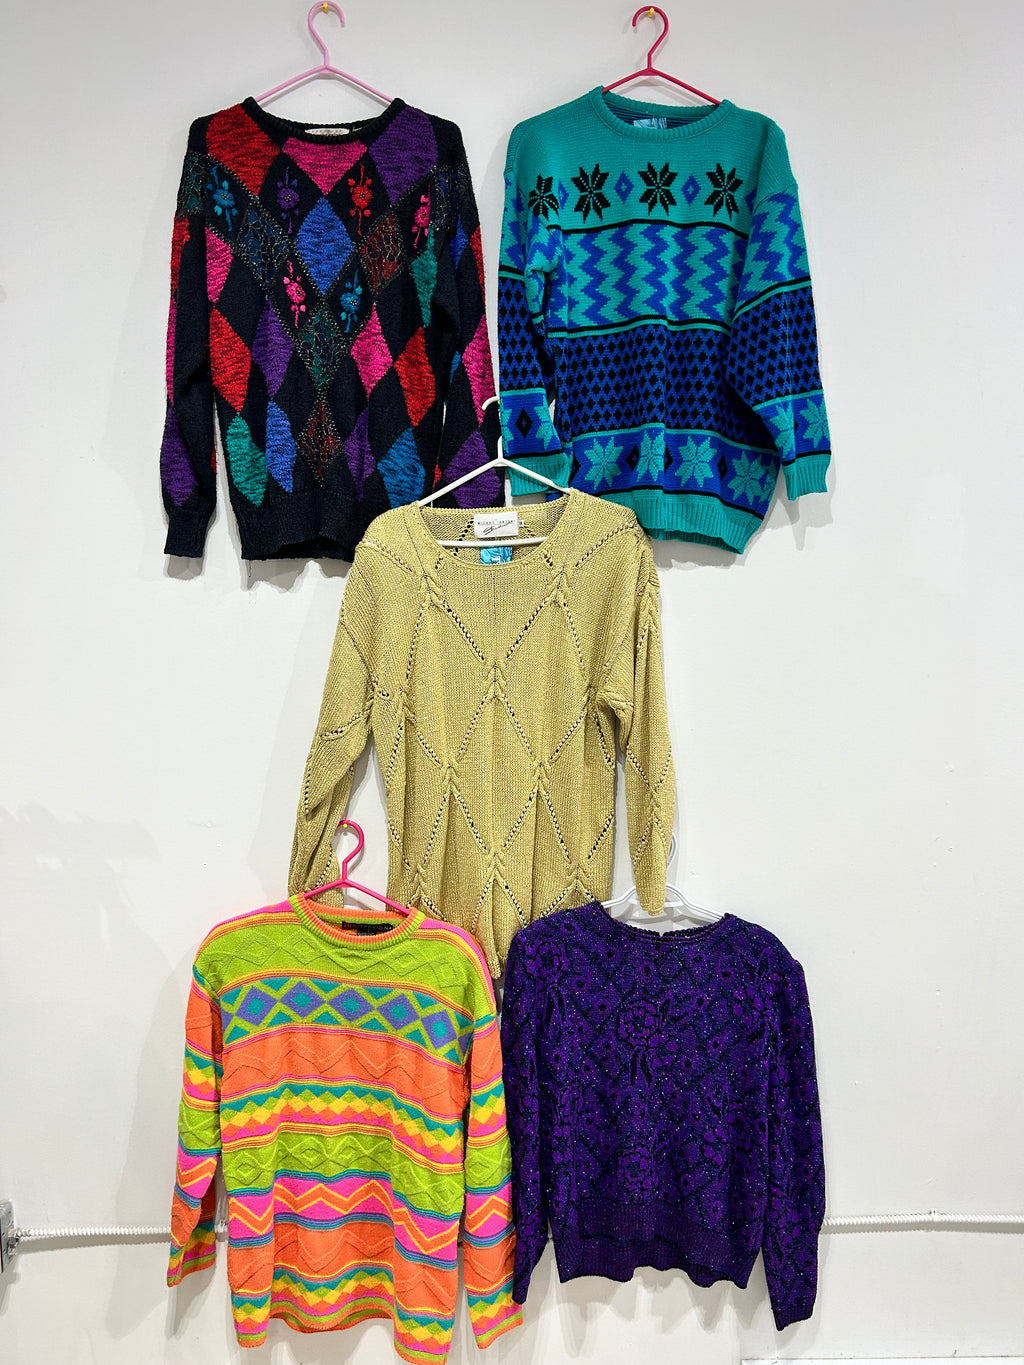 Chandails & tricots vintage & pré-aimés partie 1